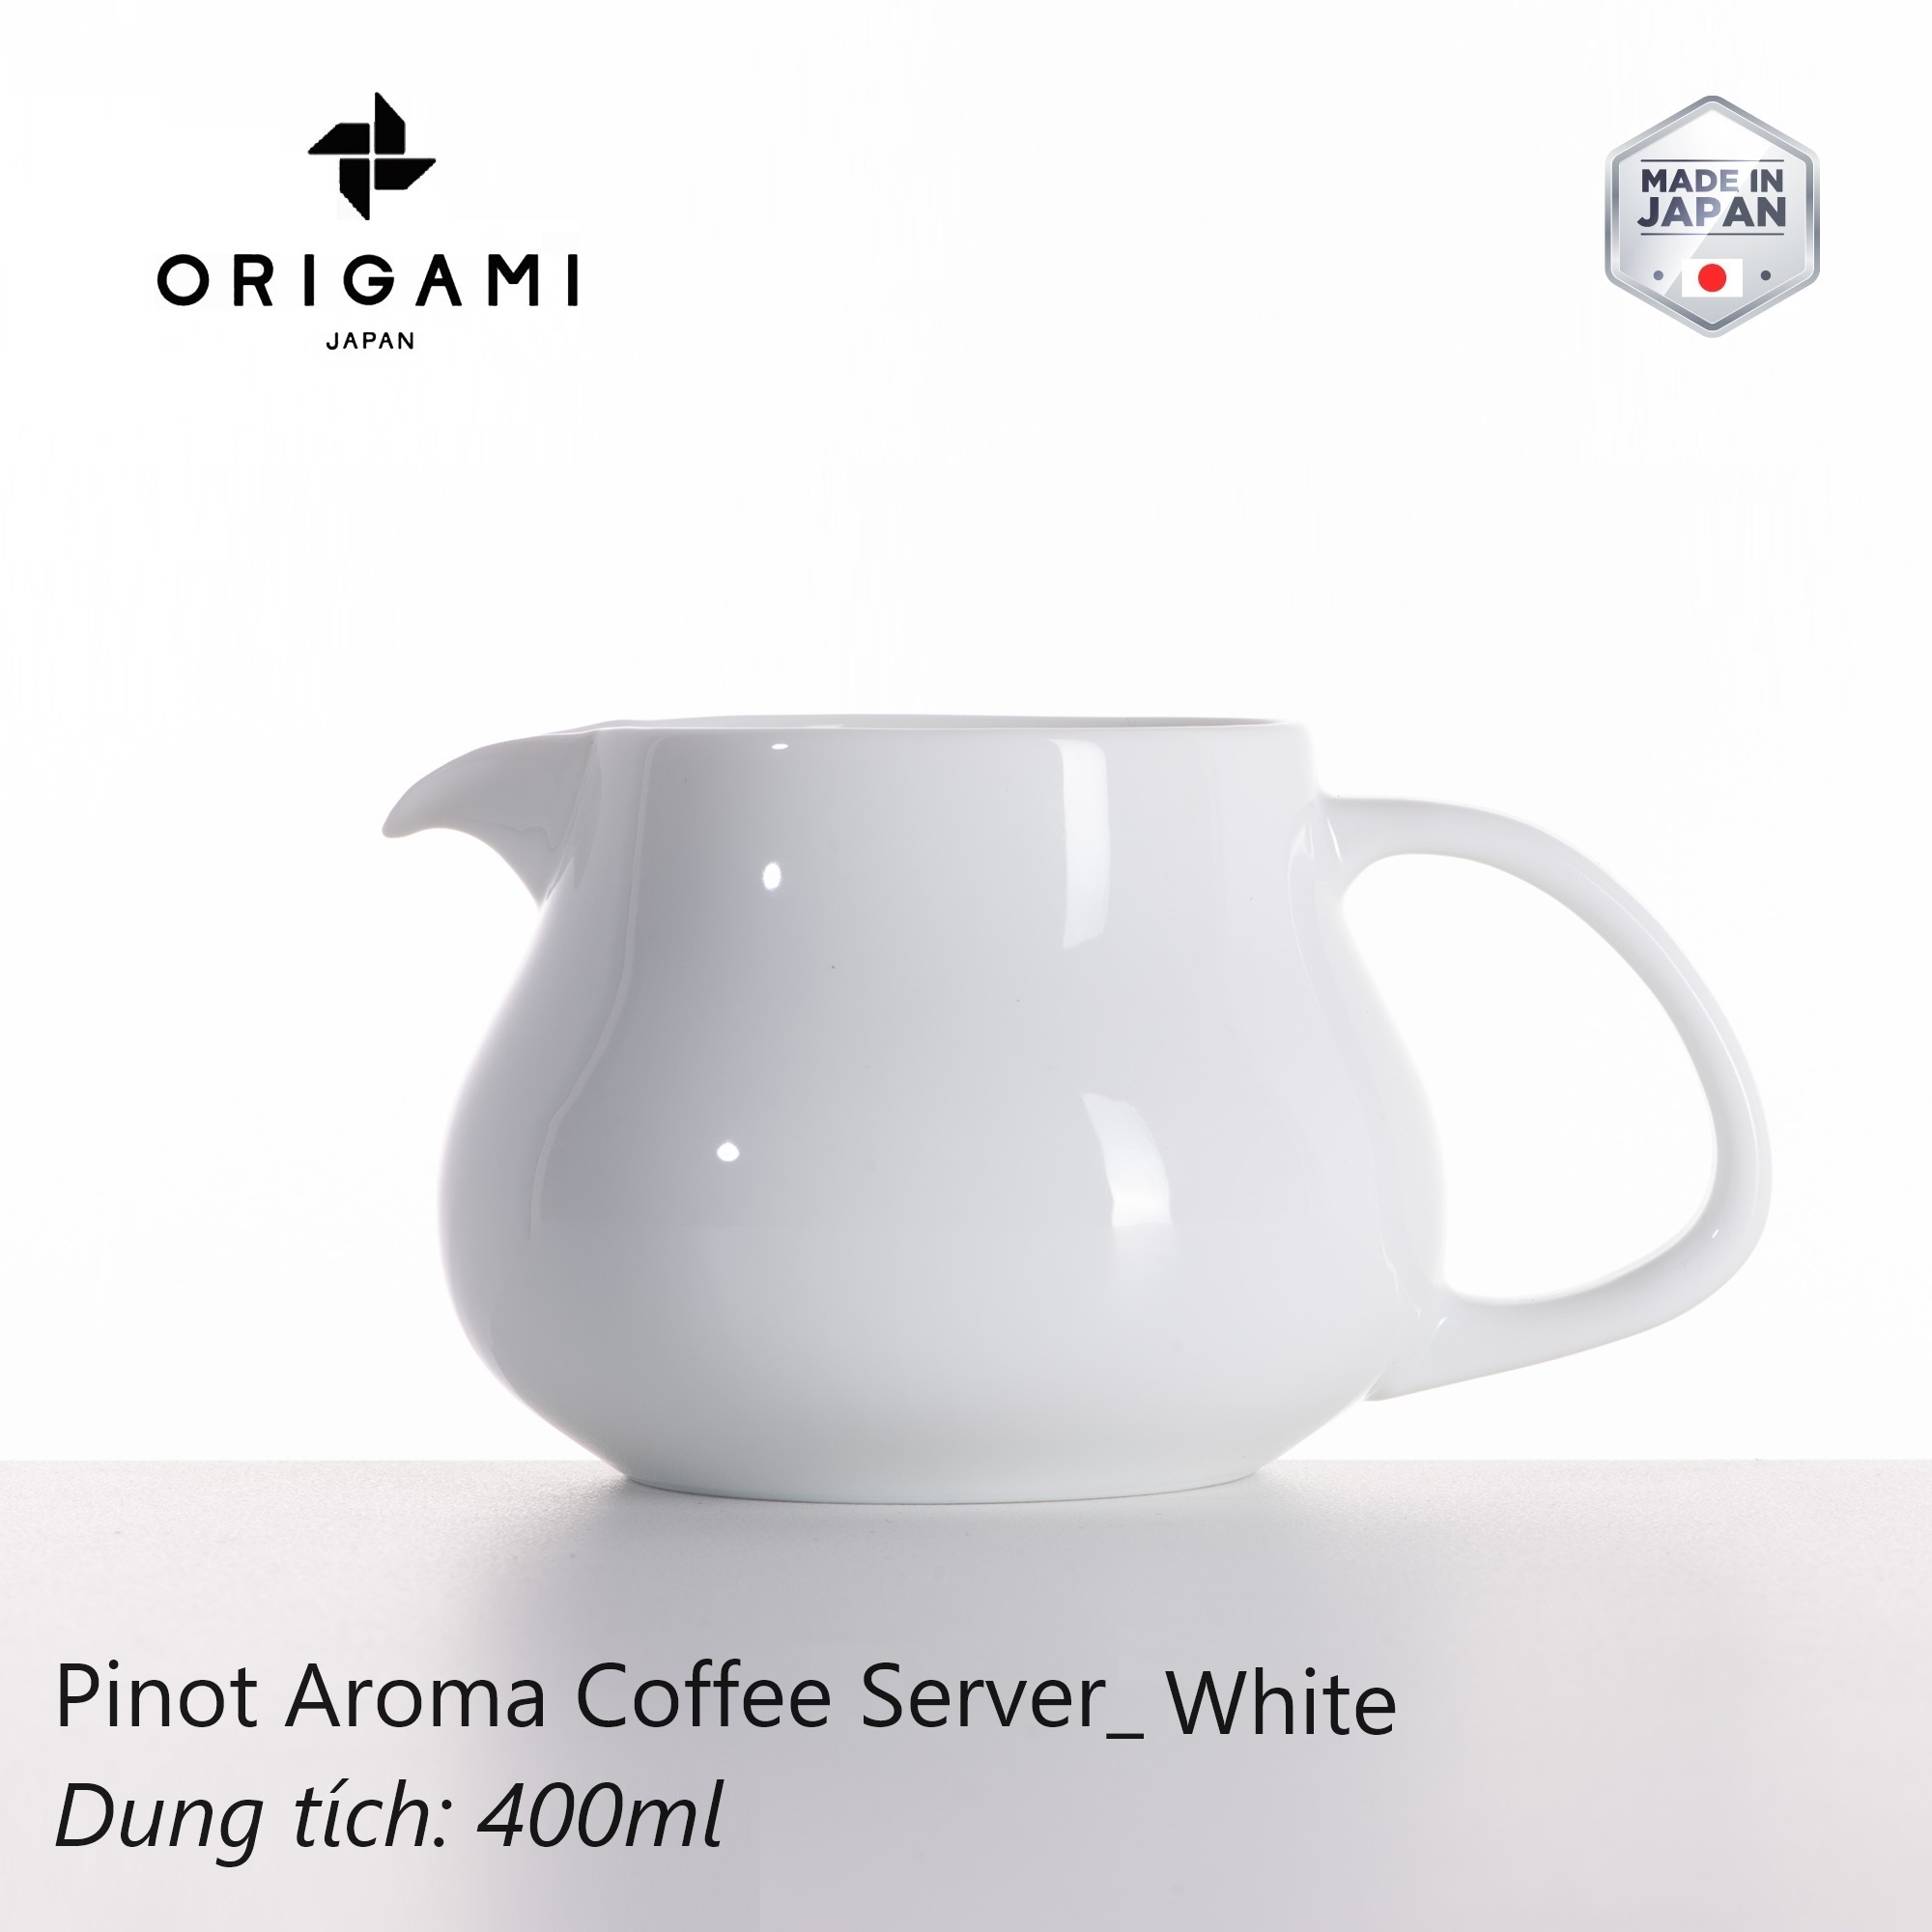 Bình sứ pha cà phê Origami Pinot Aroma Coffee Server 400ml